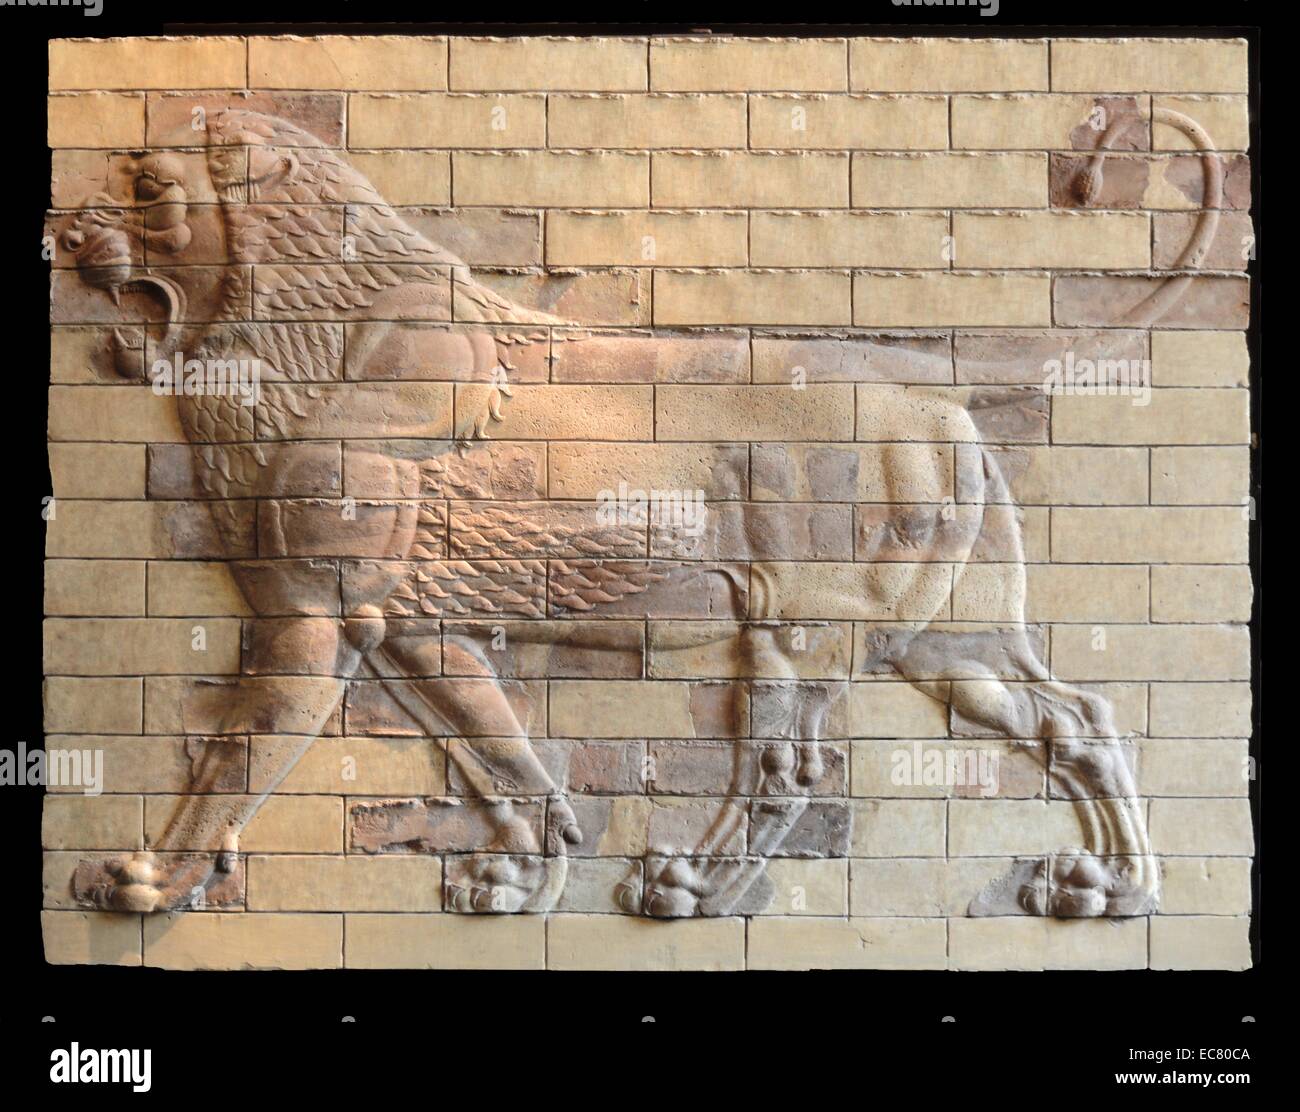 Dekorplatten geformten Ziegel - Terrakotta. Shushan, der Palast von Darius. Stockfoto